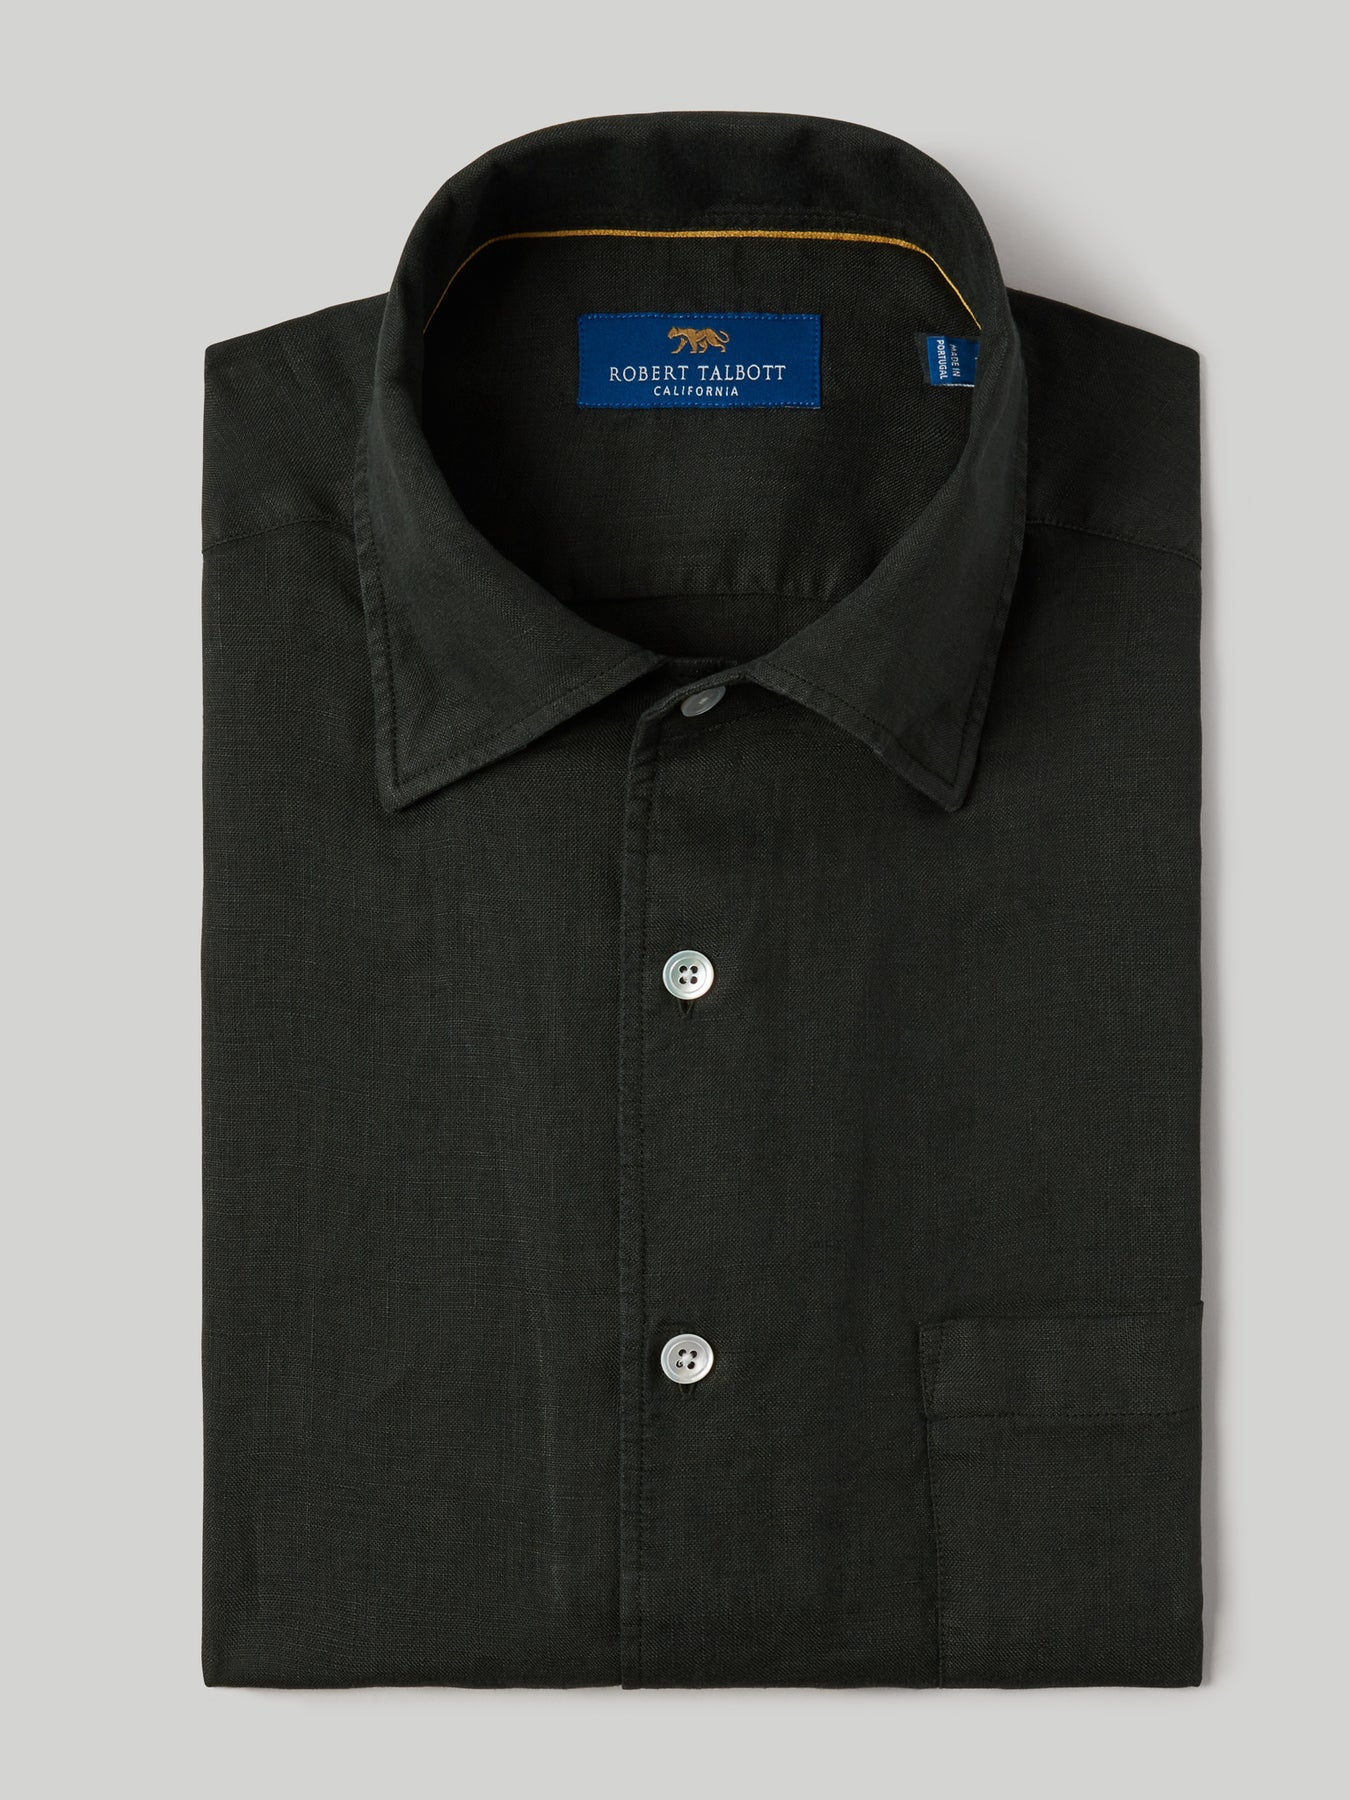 The Morgan Short Sleeve Linen Shirt – Robert Talbott